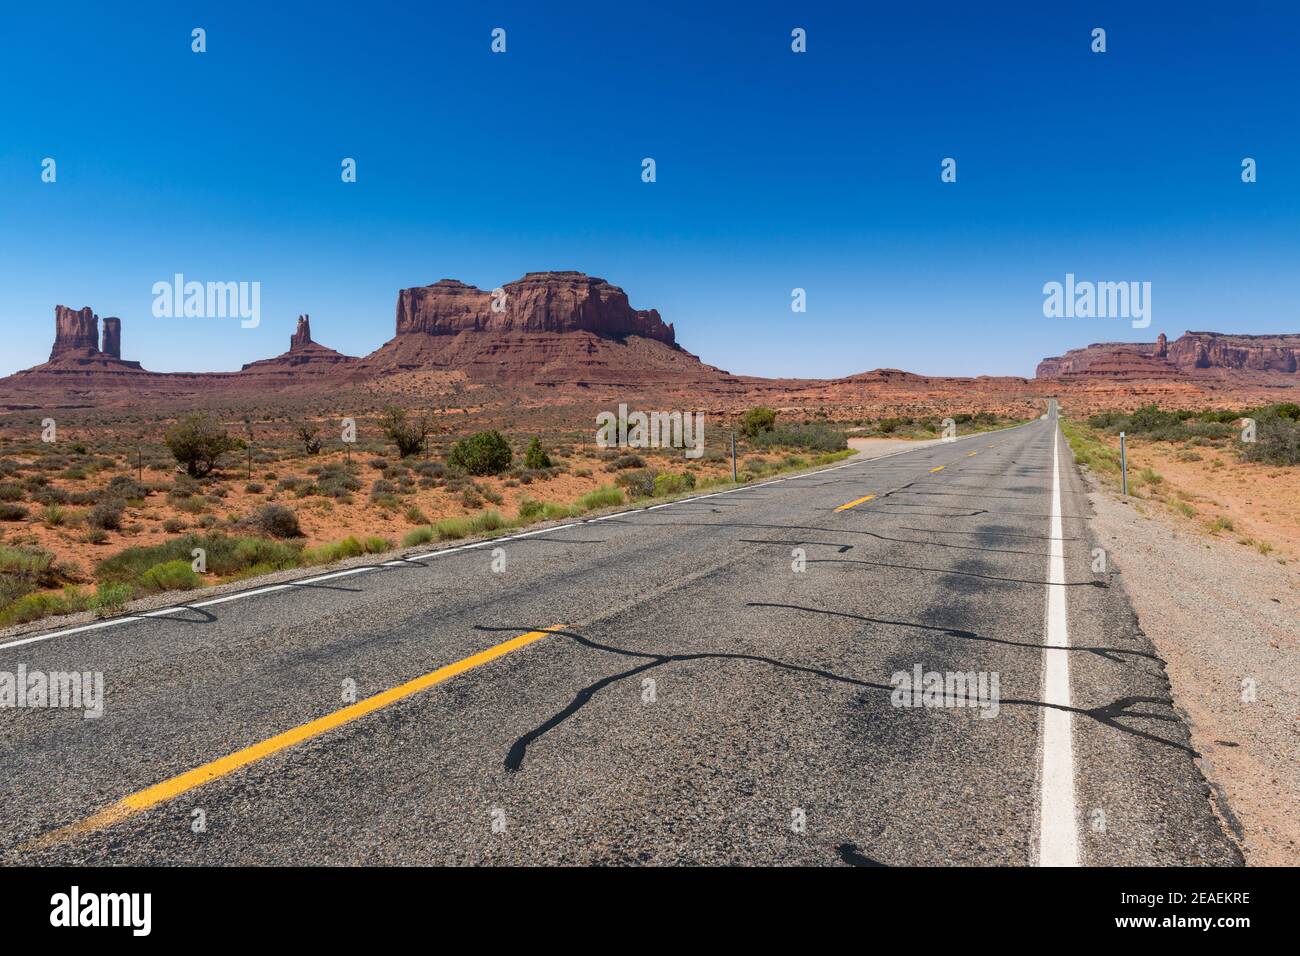 Landschaftlich schöner Blick auf das Monument Valley mit den Sandsteinbüten und einer Straße im Vordergrund; Konzept für Reisen in die USA und Roadtrip. Stockfoto